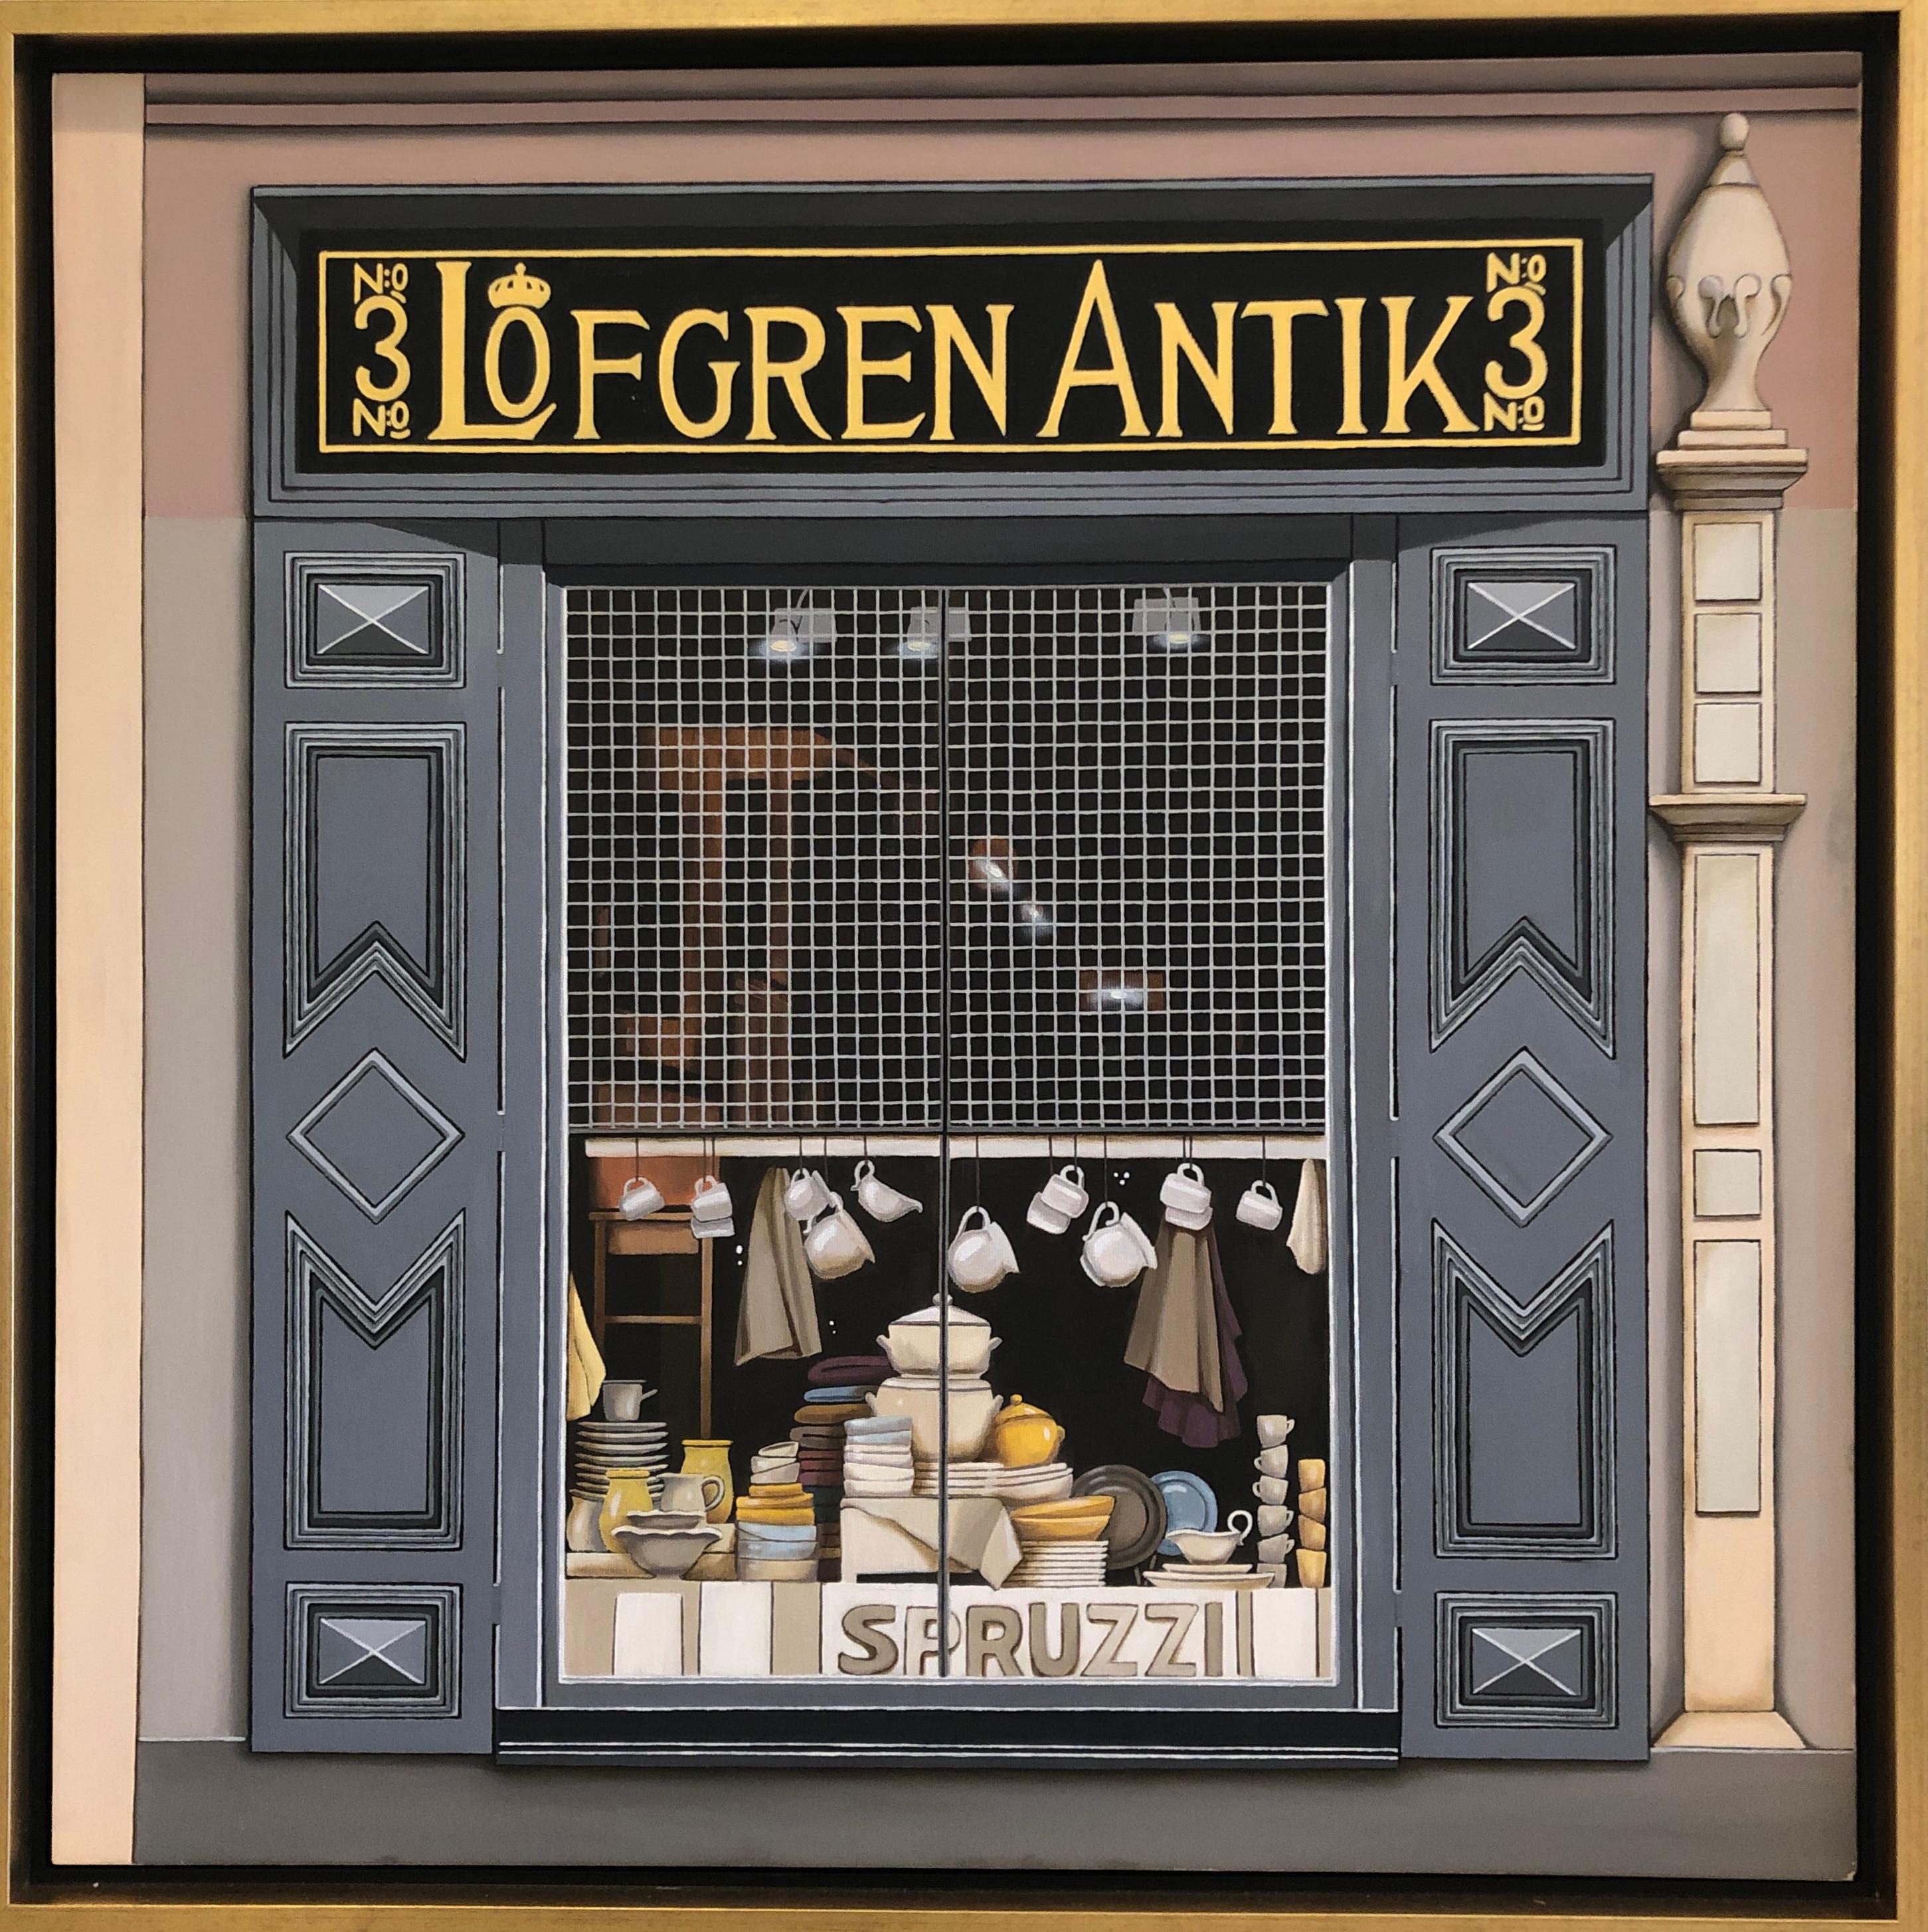 Figurative Painting Marta Mezynska - Huile sur toile d'exposition de fenêtres anciennes de Lofgren